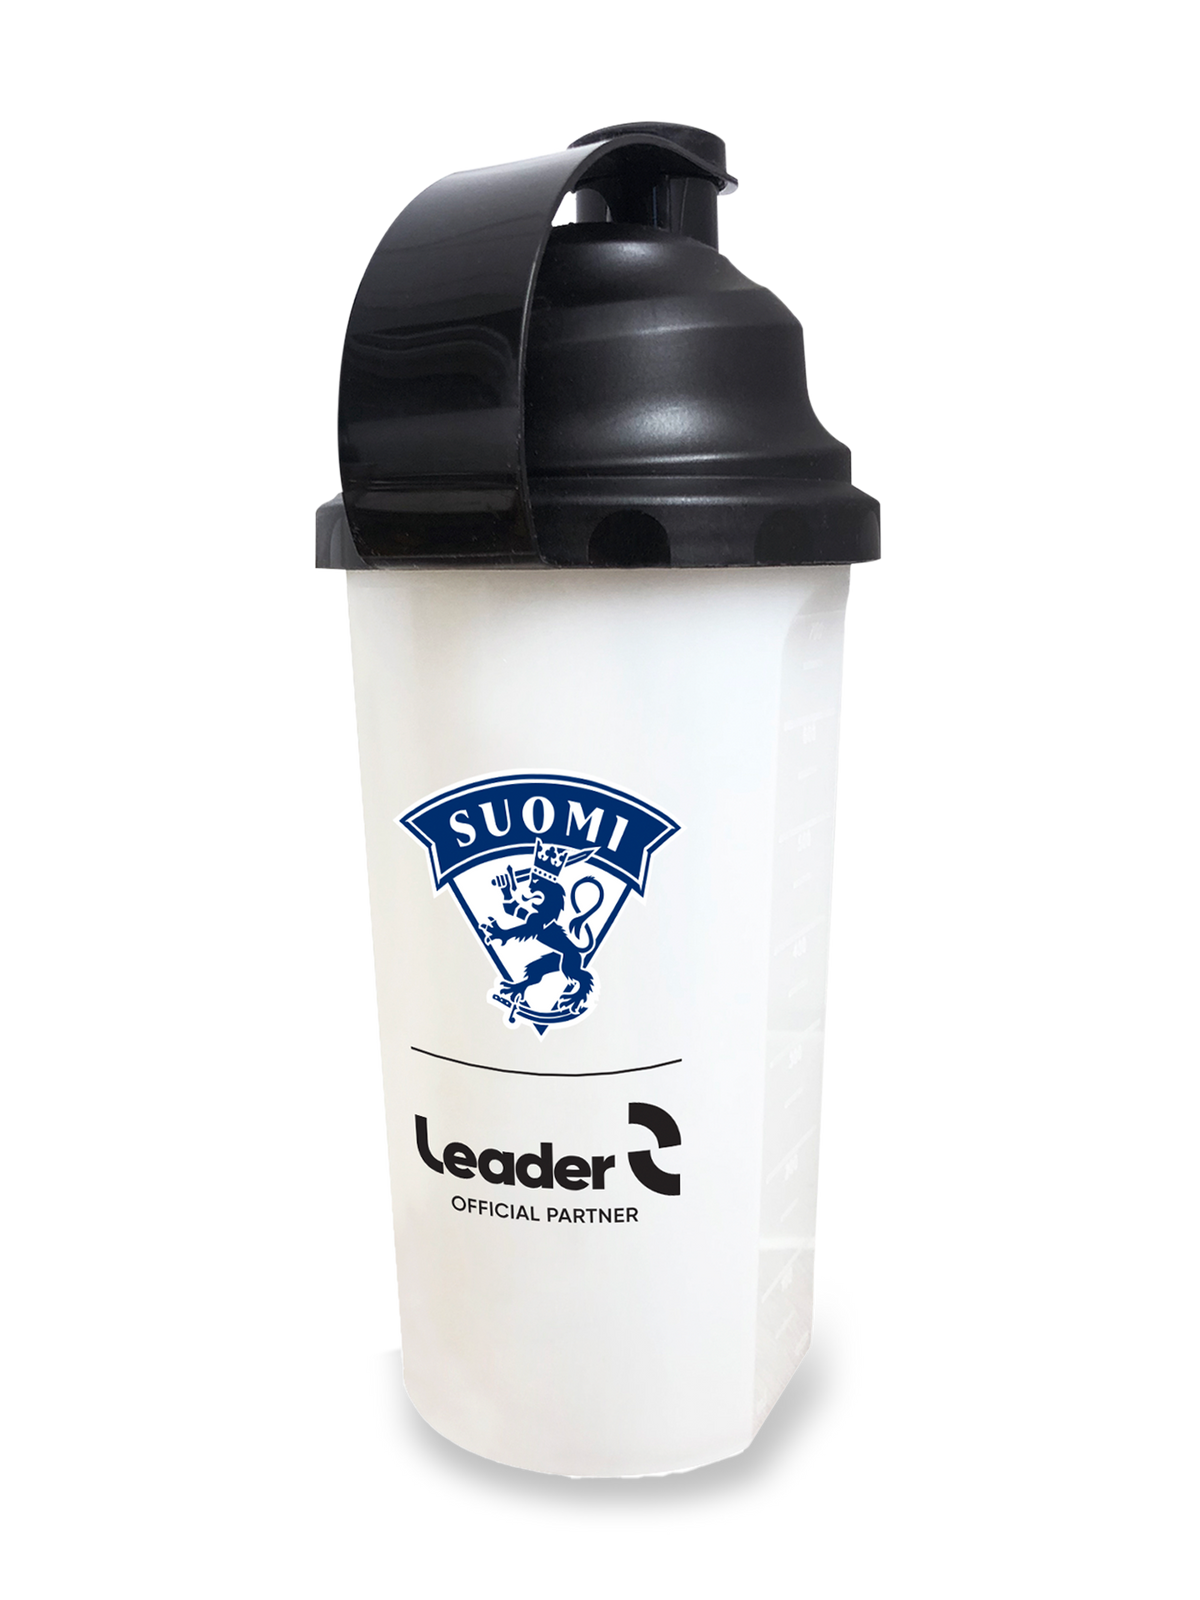 Leader X Leijona Shaker 700 ml